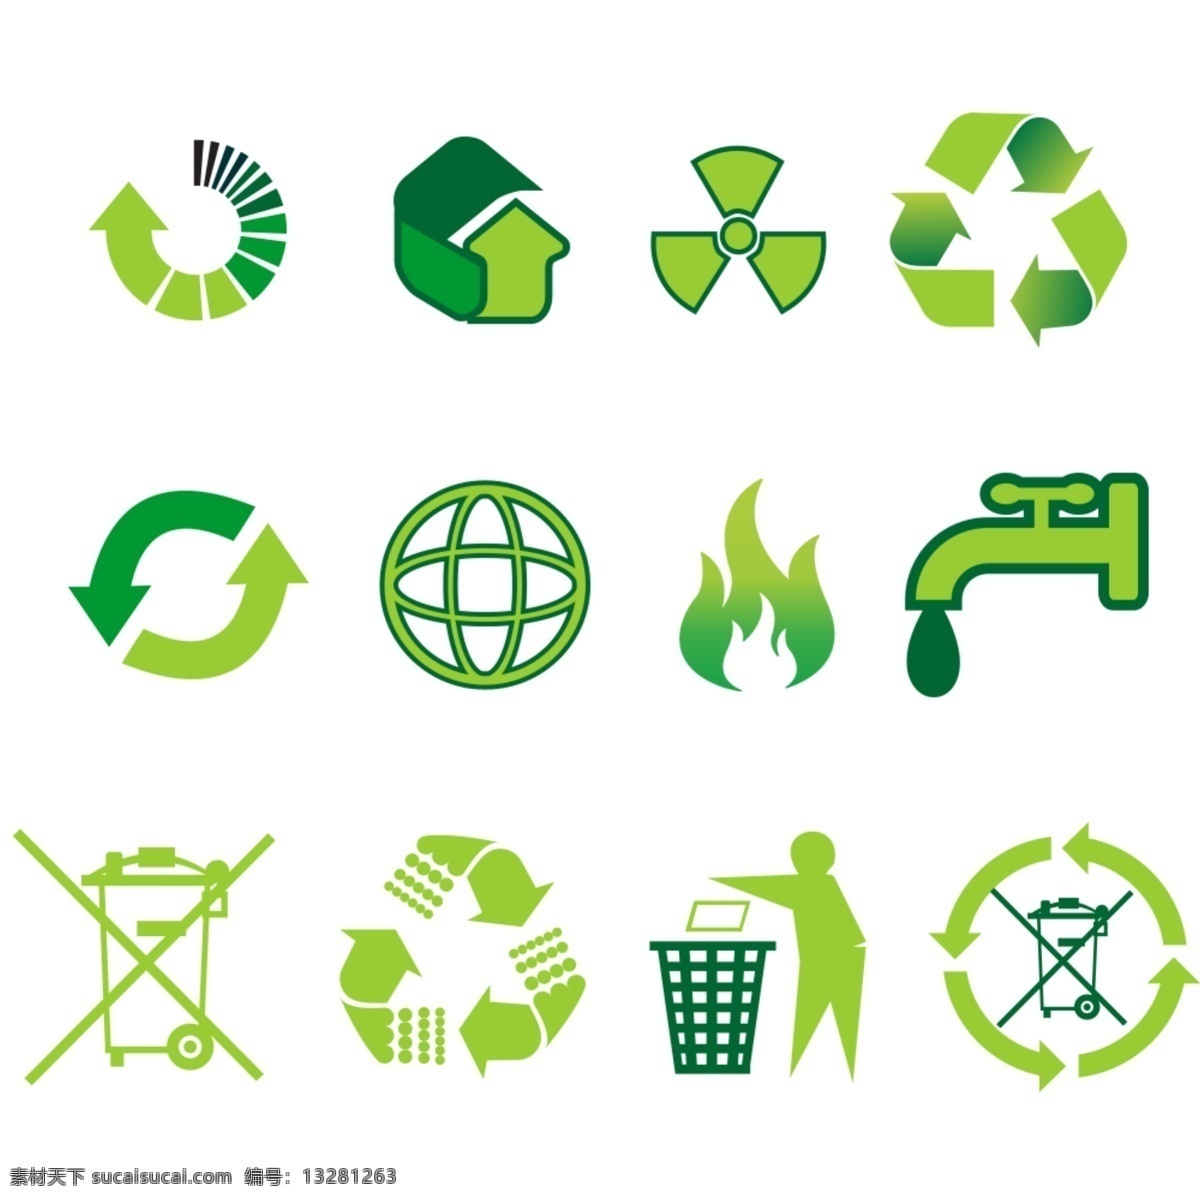 环保小图标 环保标志 环保 绿色 无污染 标志 绿色可回收 垃圾入框 循环 节约用水 小心火灾 环保教育 学校教育 社区宣传